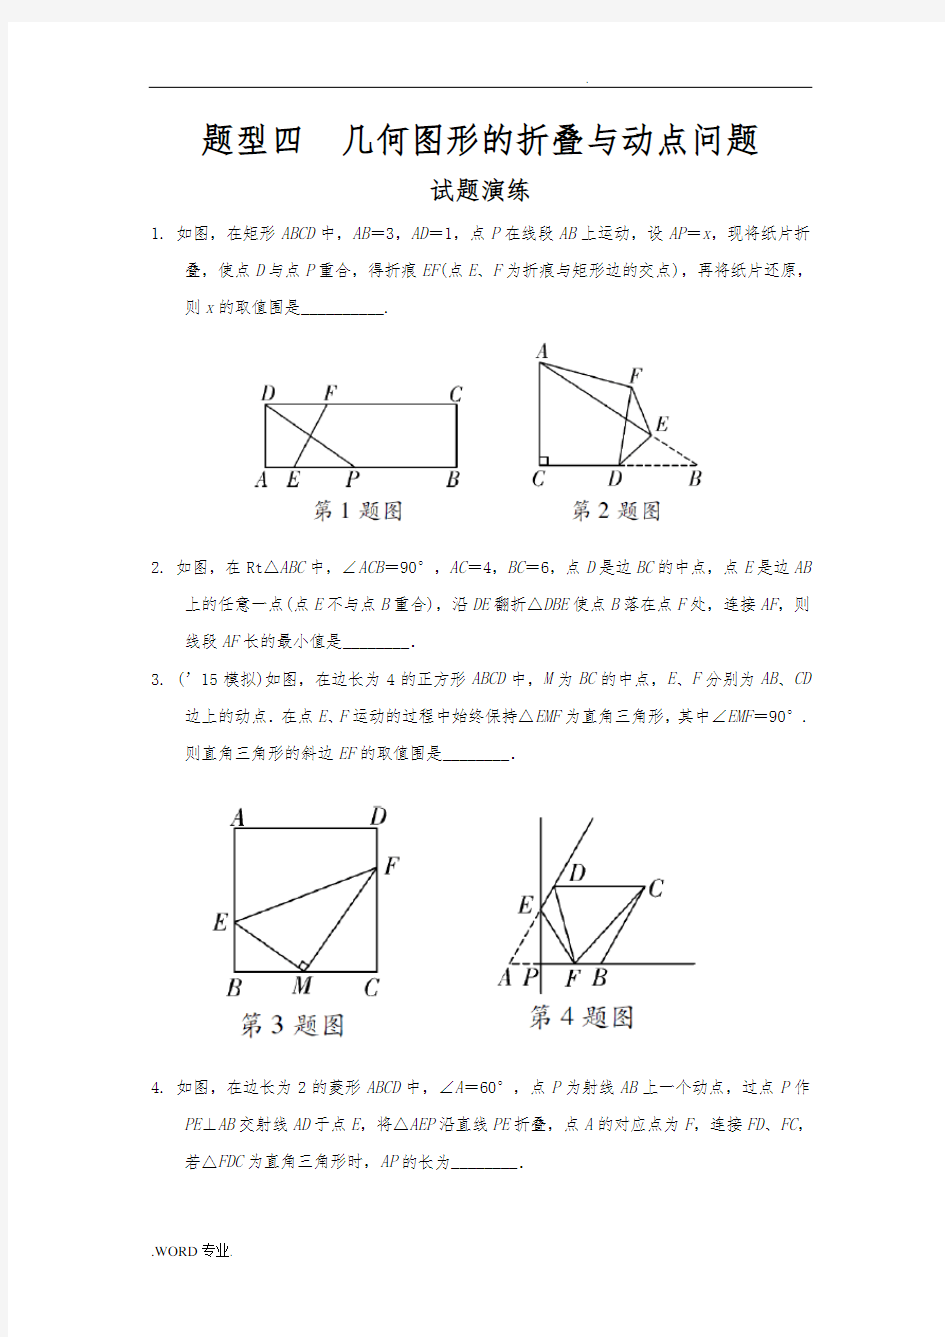 题型四_几何图形的折叠与动点问题